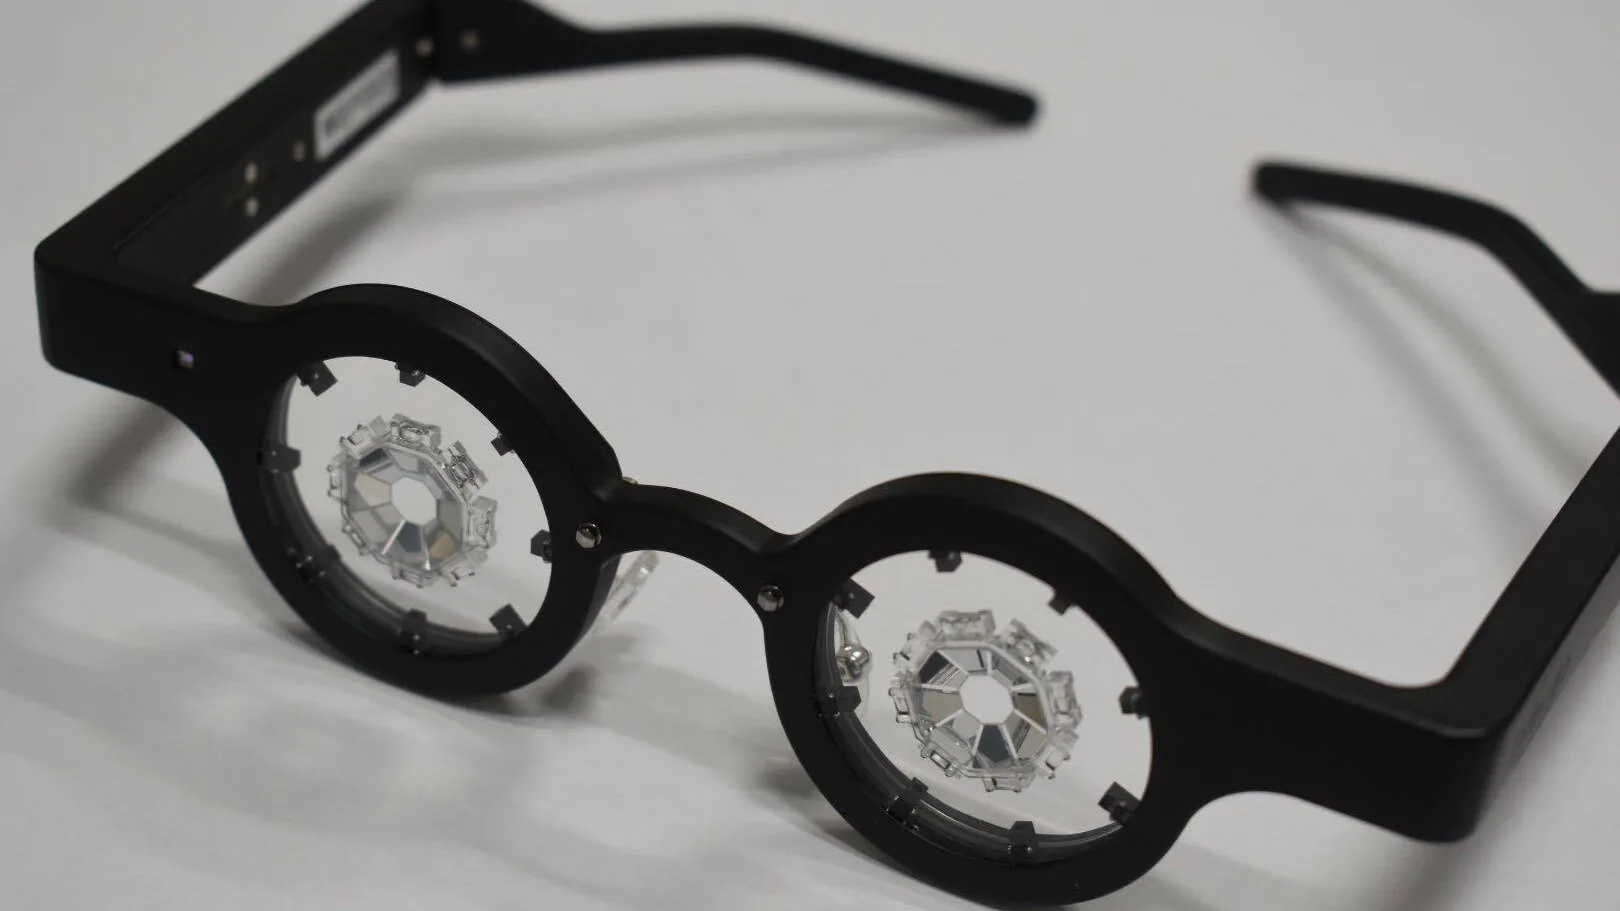 Salen a la venta los anteojos japoneses que prometen corregir la miopía sin cirugía 